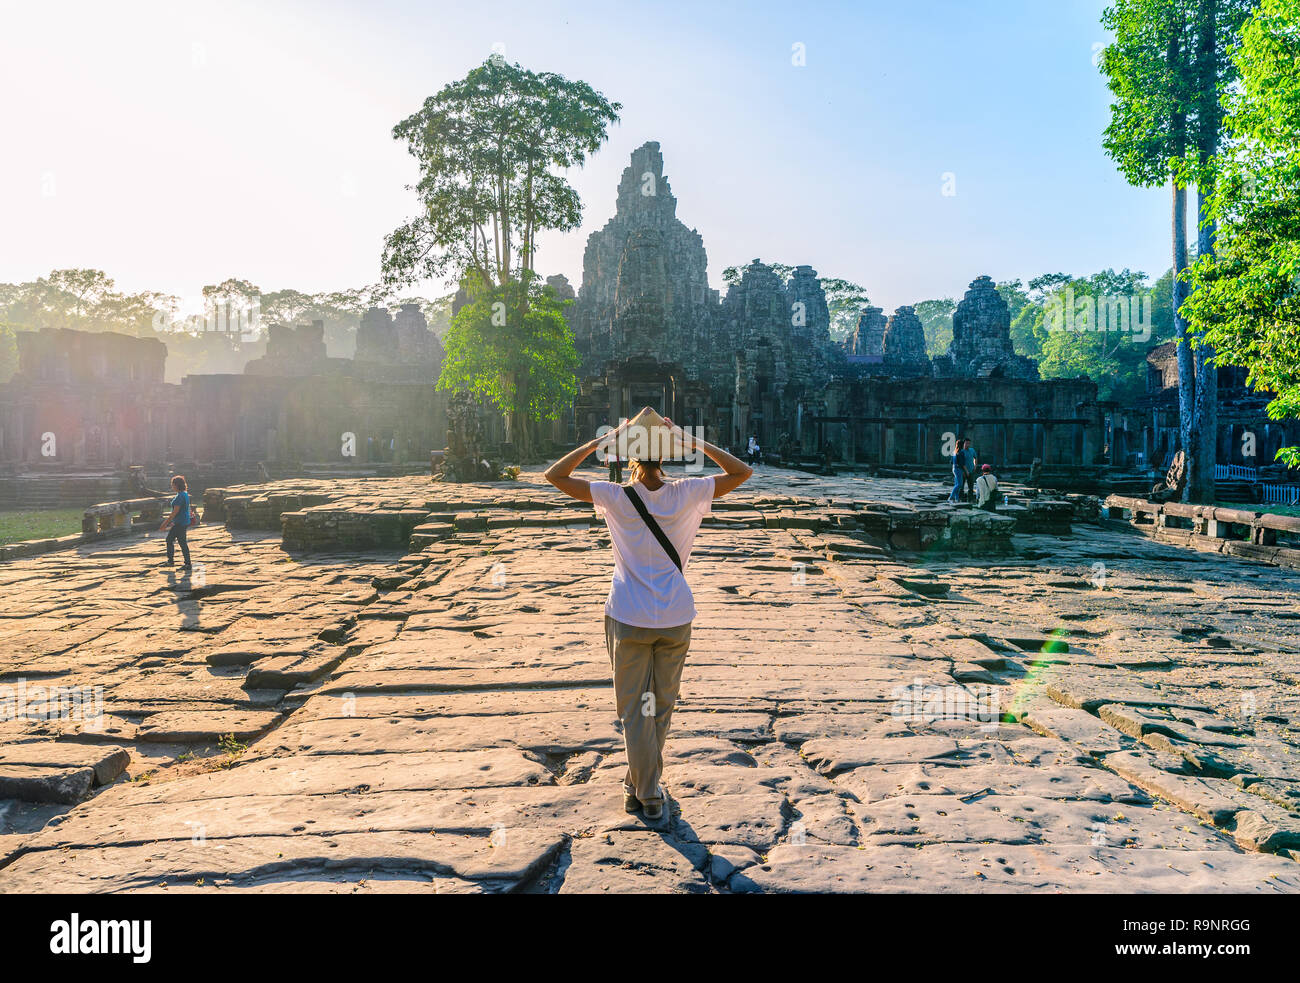 Einen touristischen Besuch Bayon Tempel, Angkor Thom Ruinen, Reiseziel Kambodscha. Frau mit traditionellen Hut und erhobenen Armen, Rückansicht, sunrise sunb Stockfoto